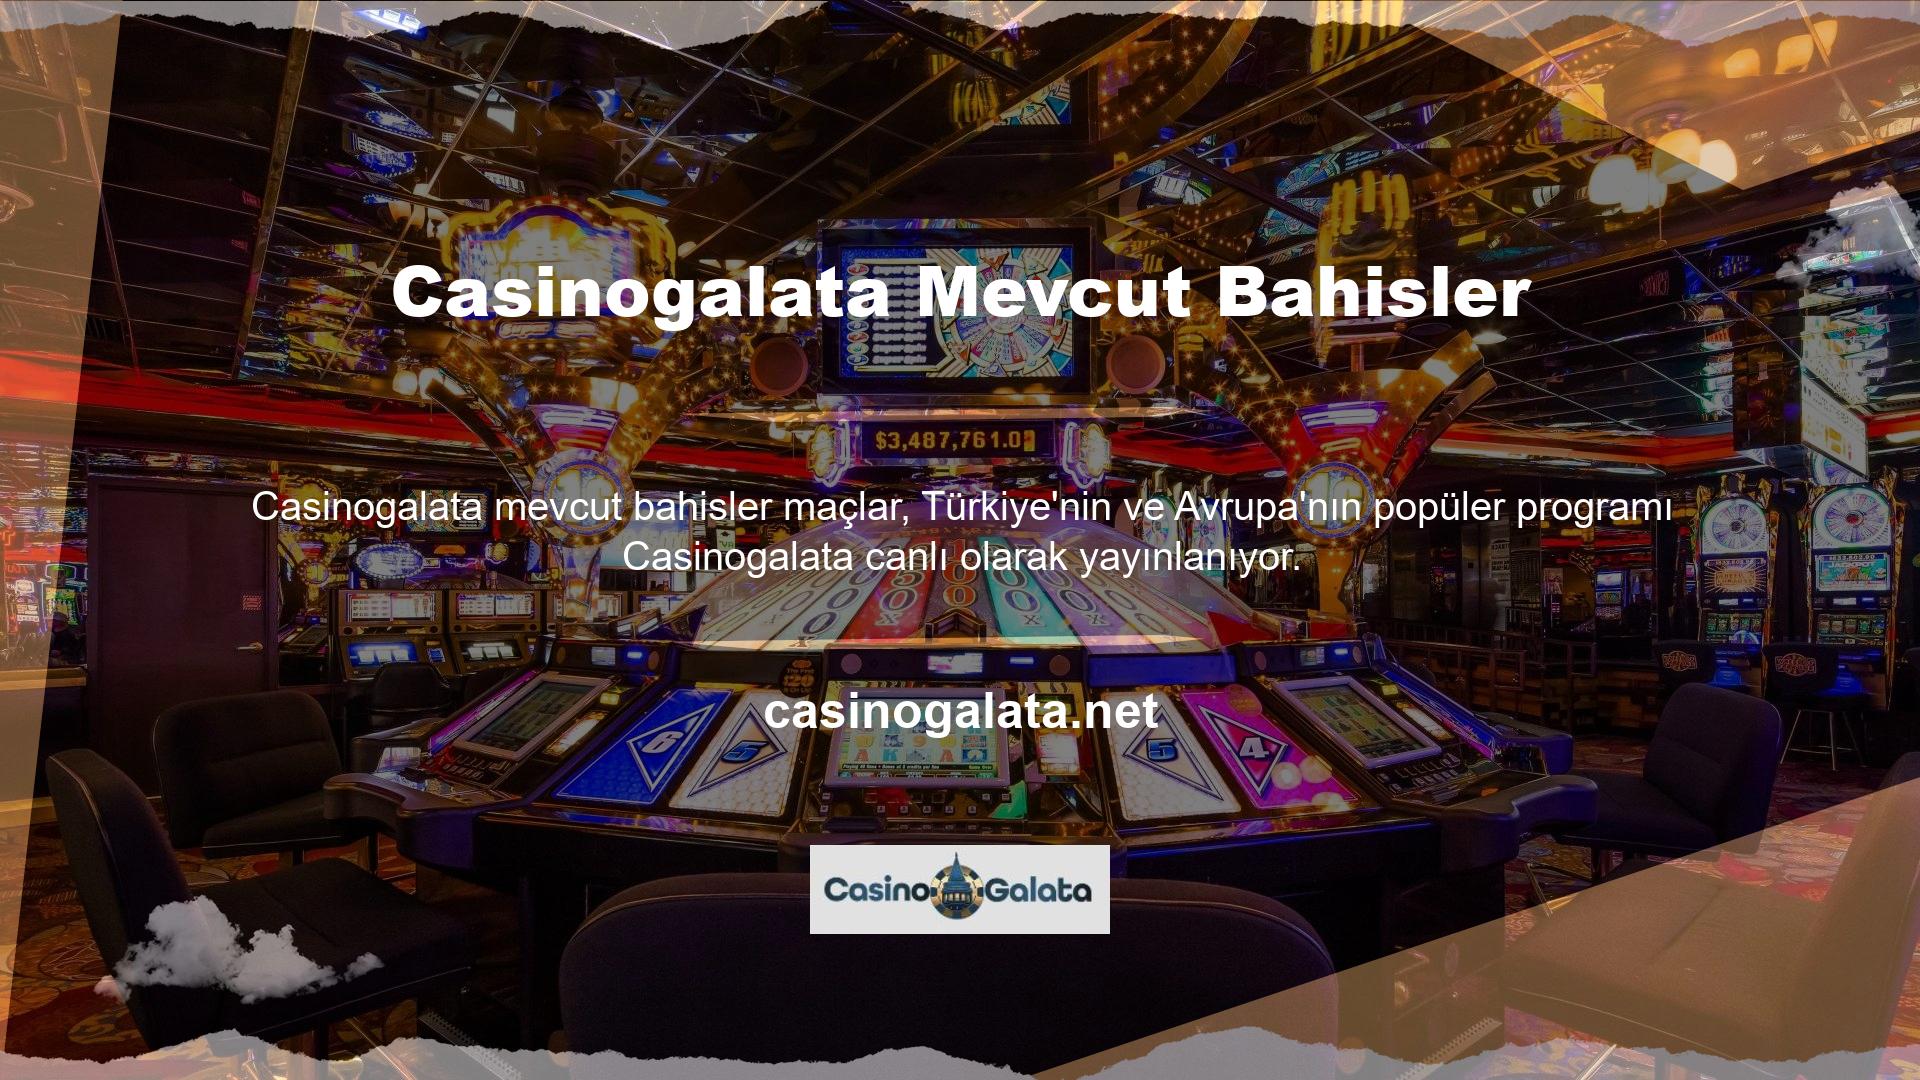 Twitter Bahis sitesi Casinogalata, futbol ve spor hayranları için ücretsiz canlı yayın hizmeti sunmaktadır